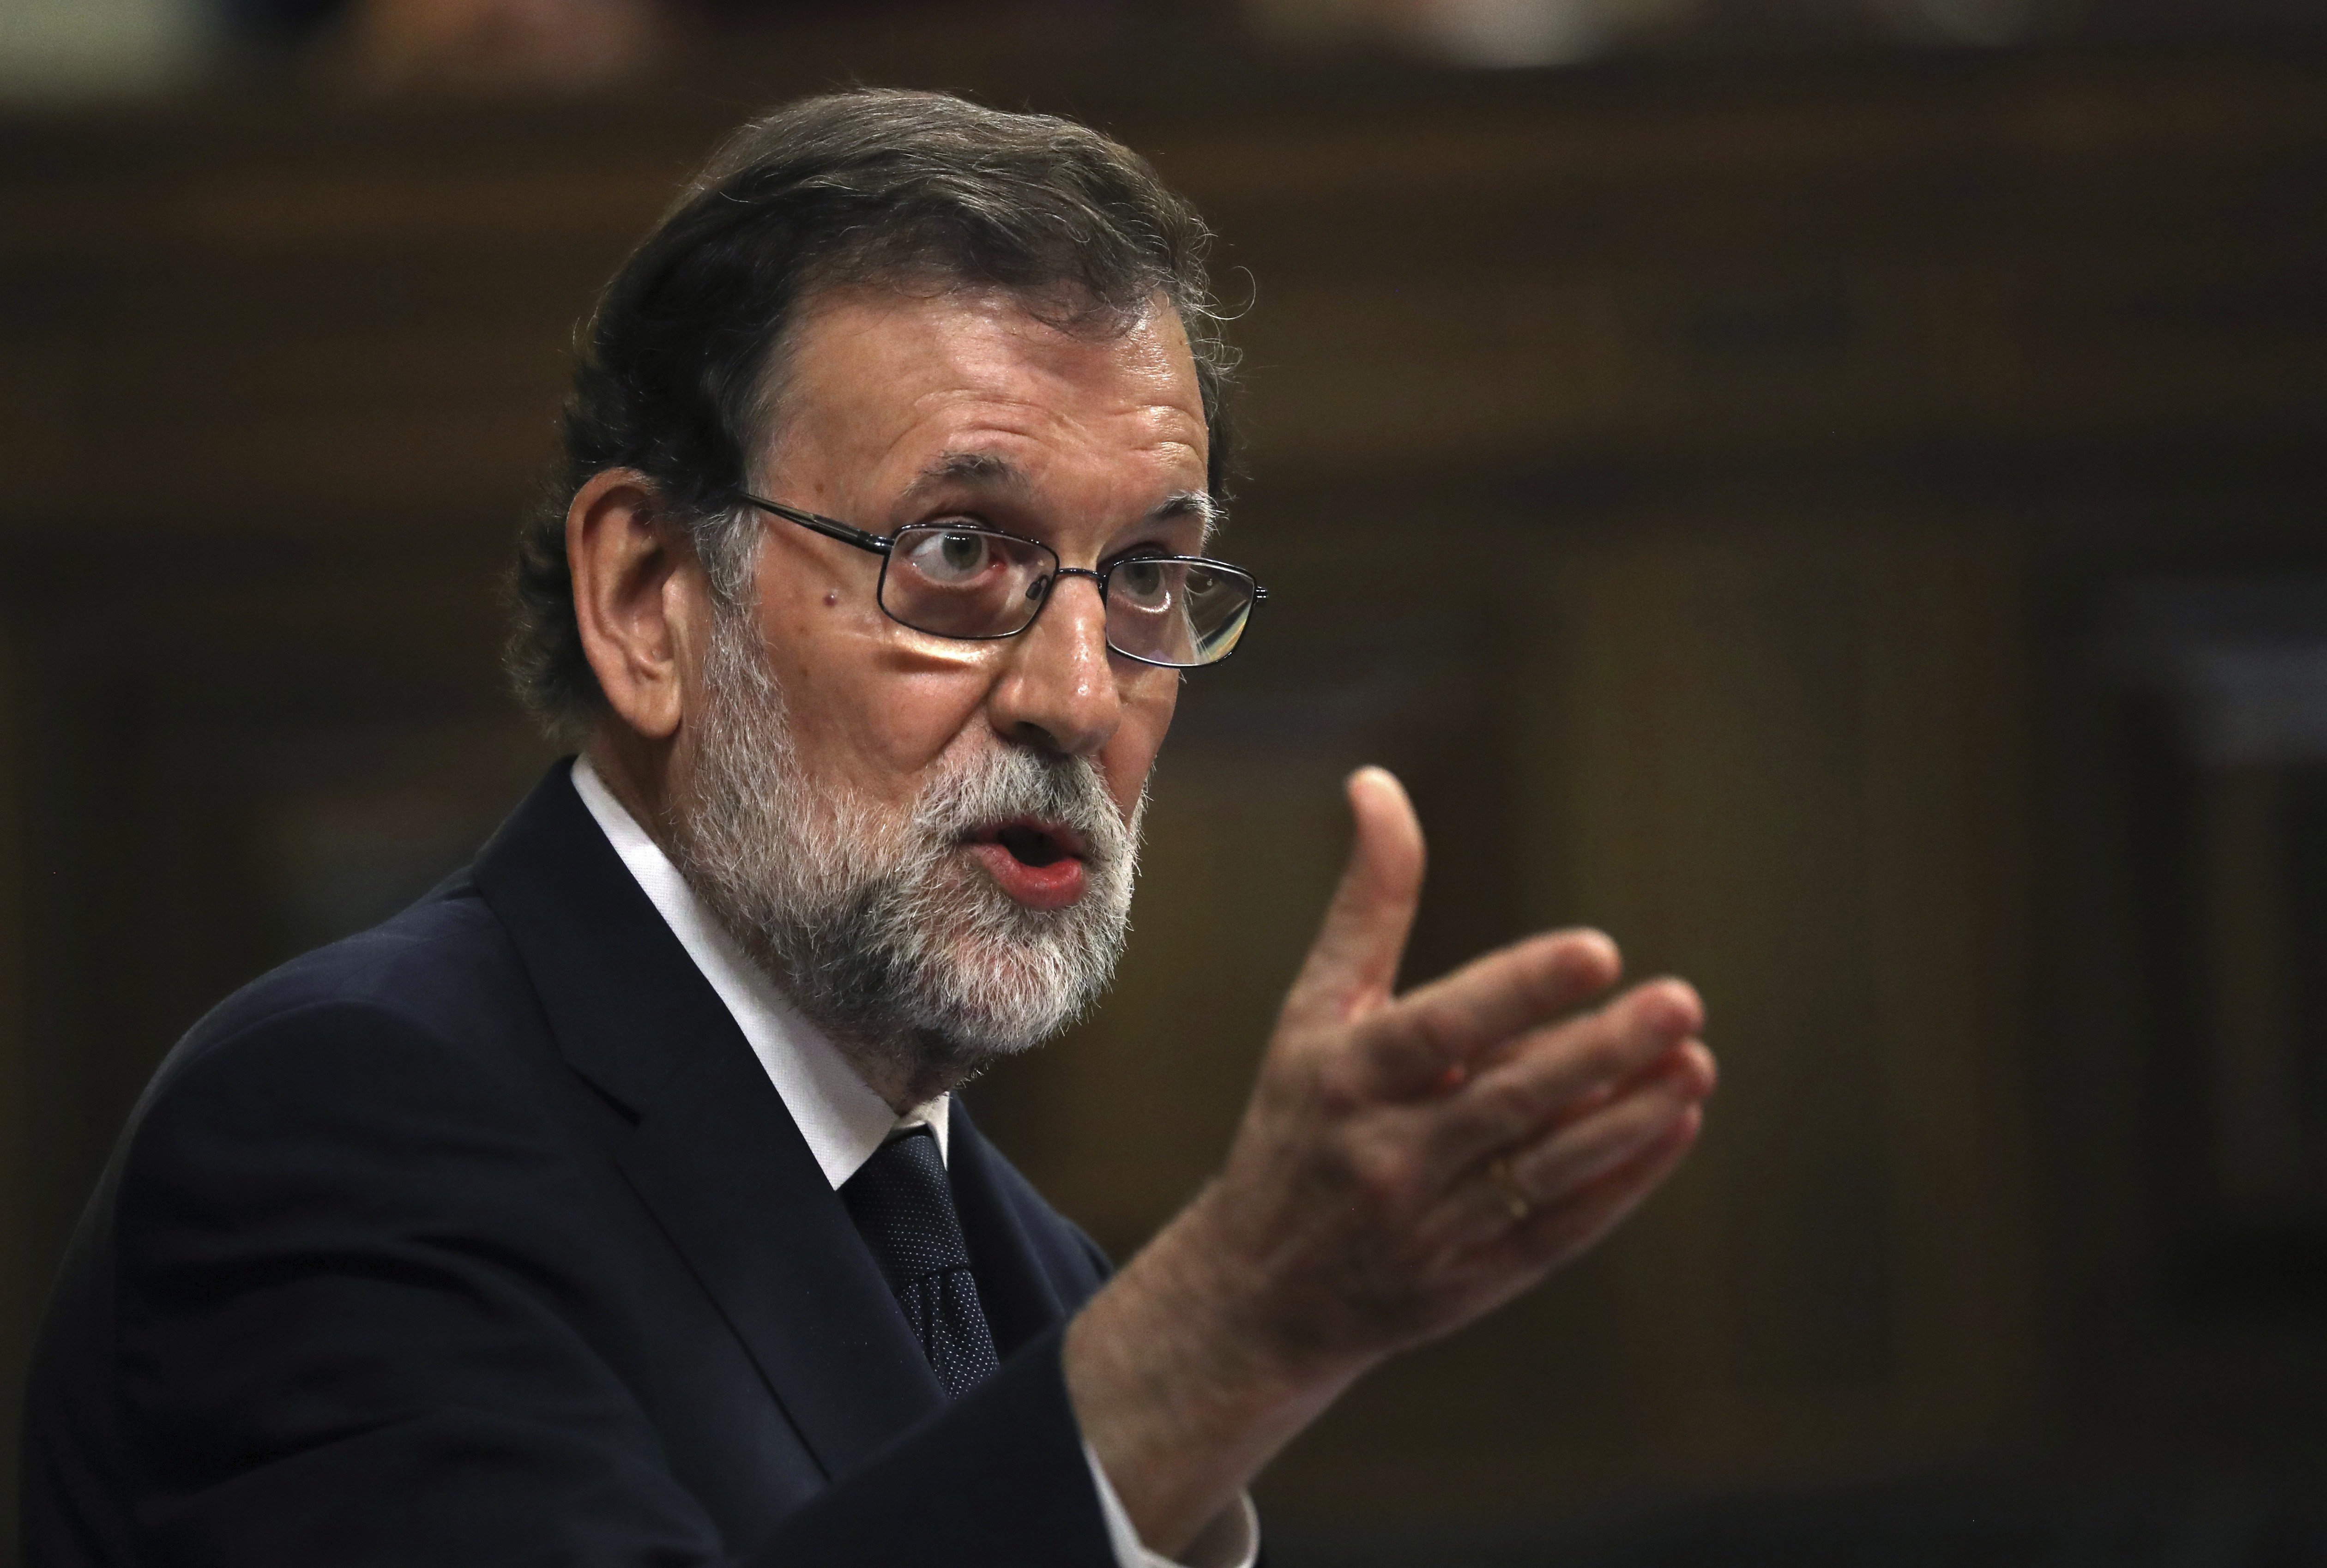 L'Estat torna a rebutjar que Puigdemont s'expliqui al Congrés sense votació